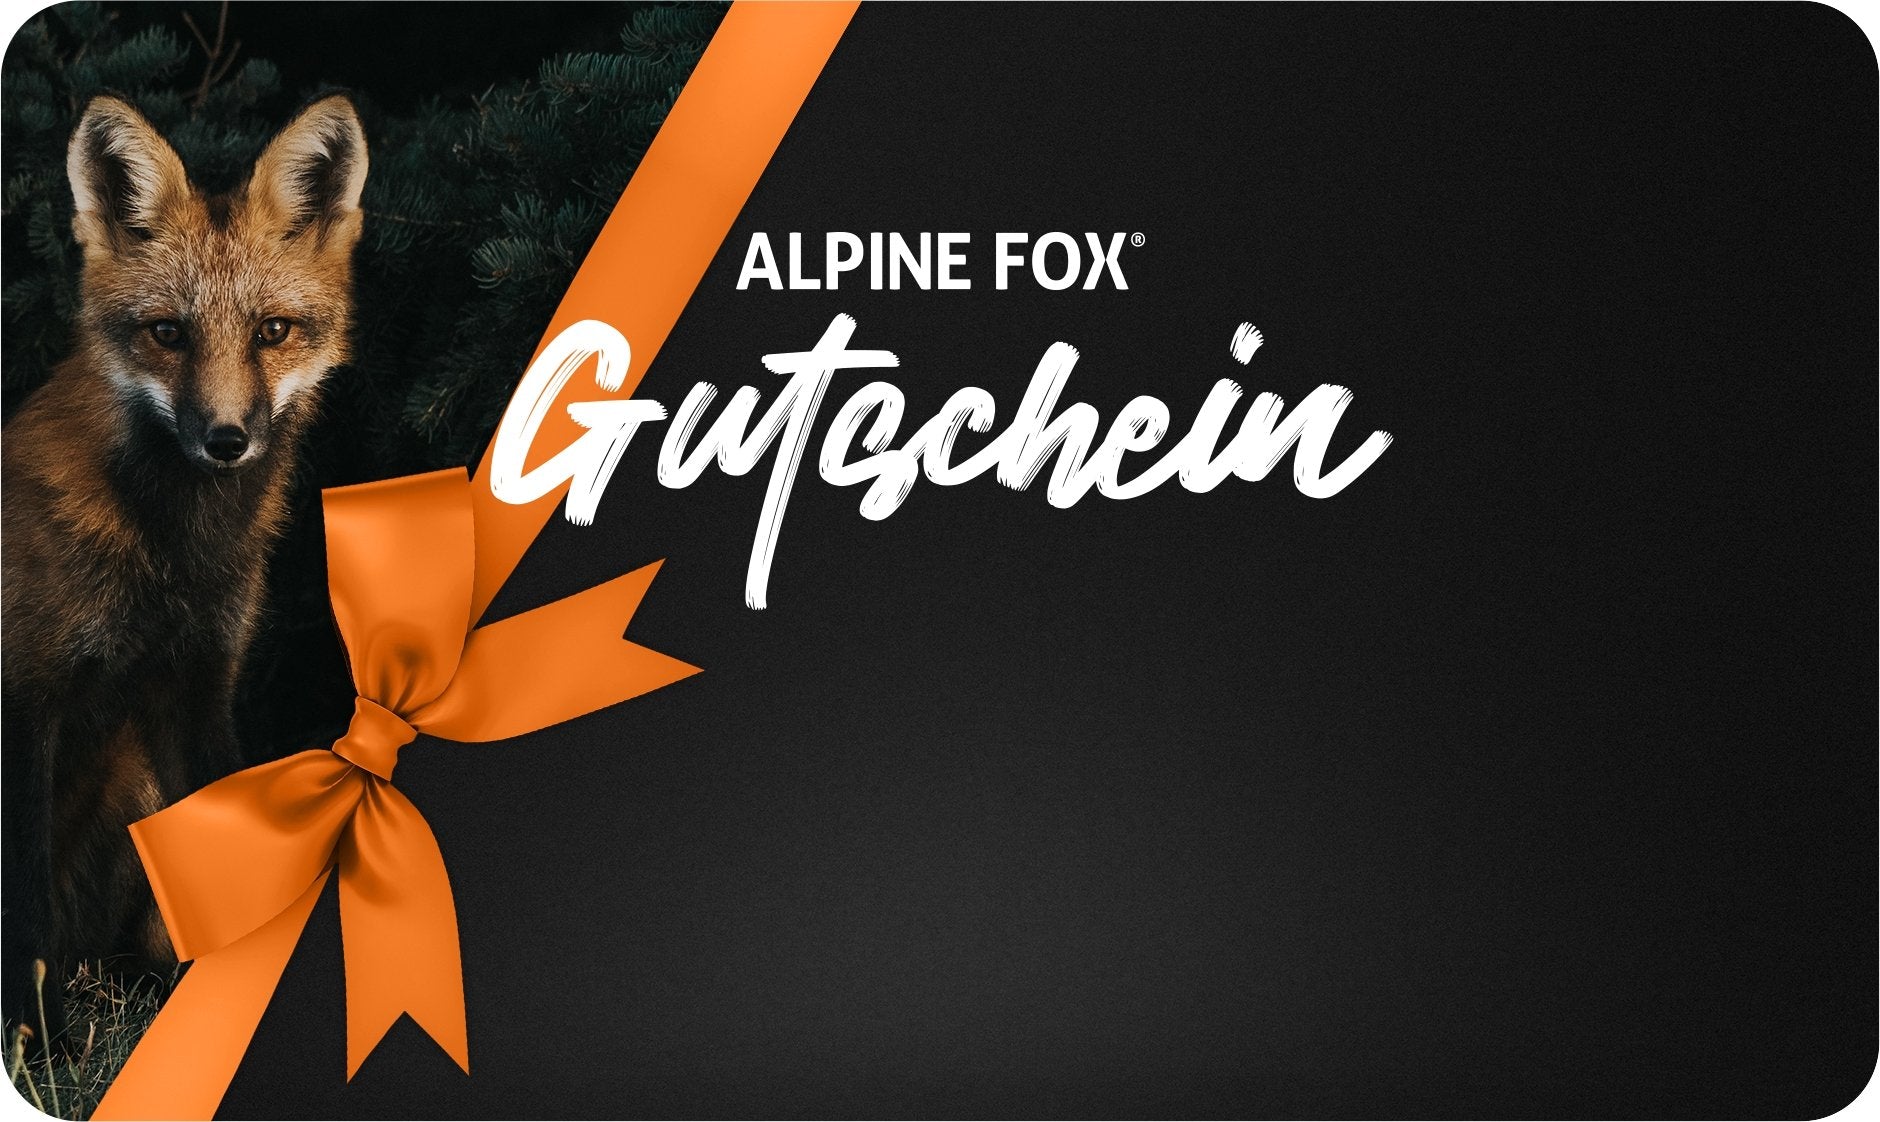 Alpine Fox®